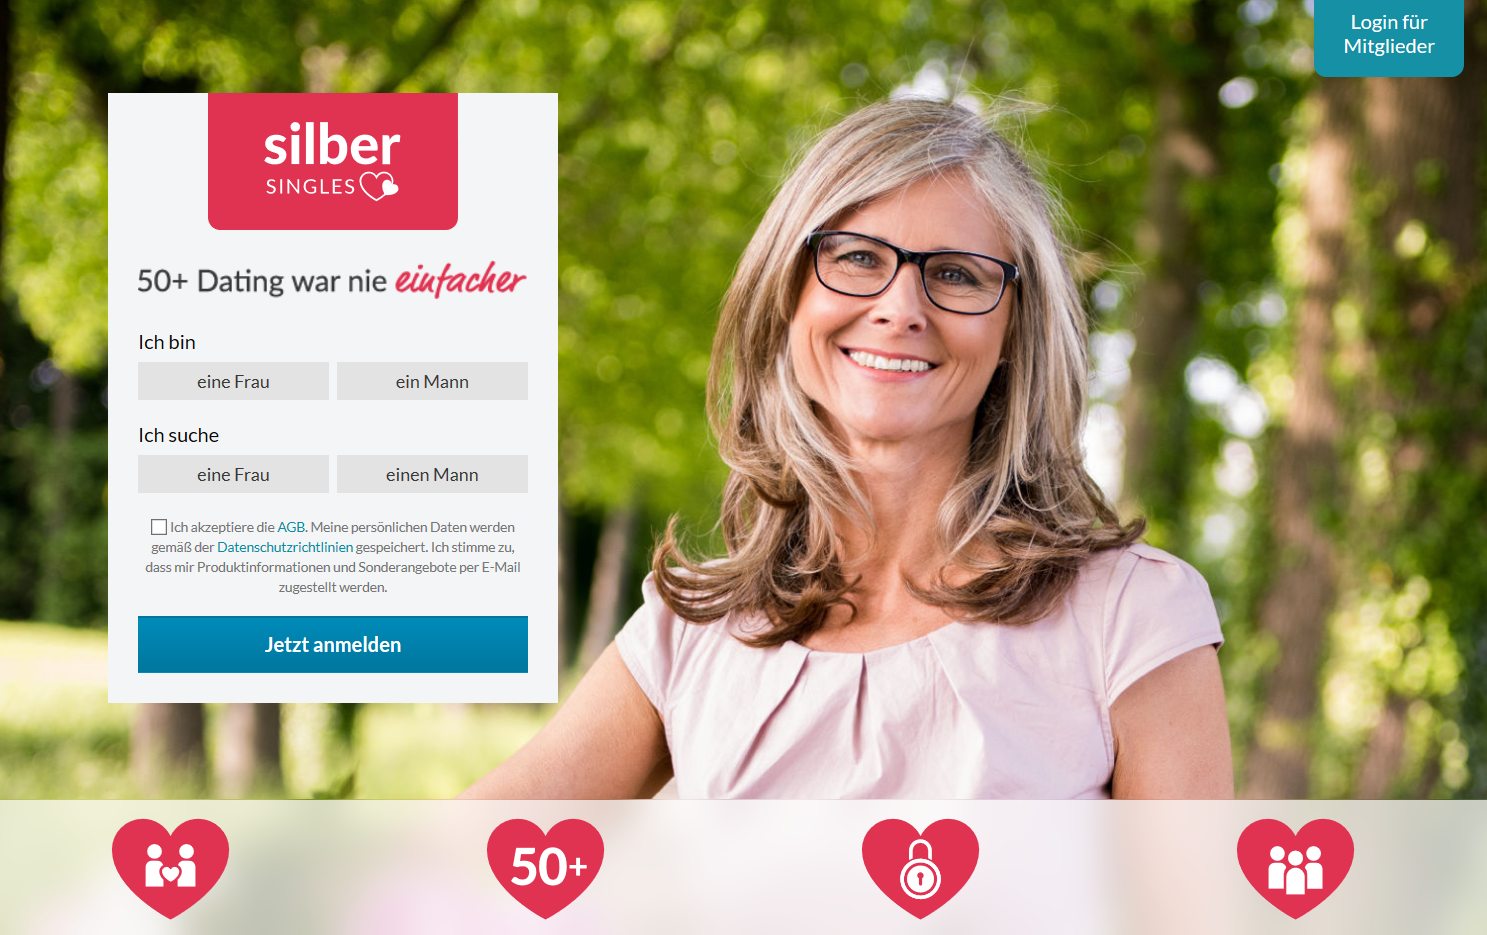 Bester online-dating-service für menschen über 50